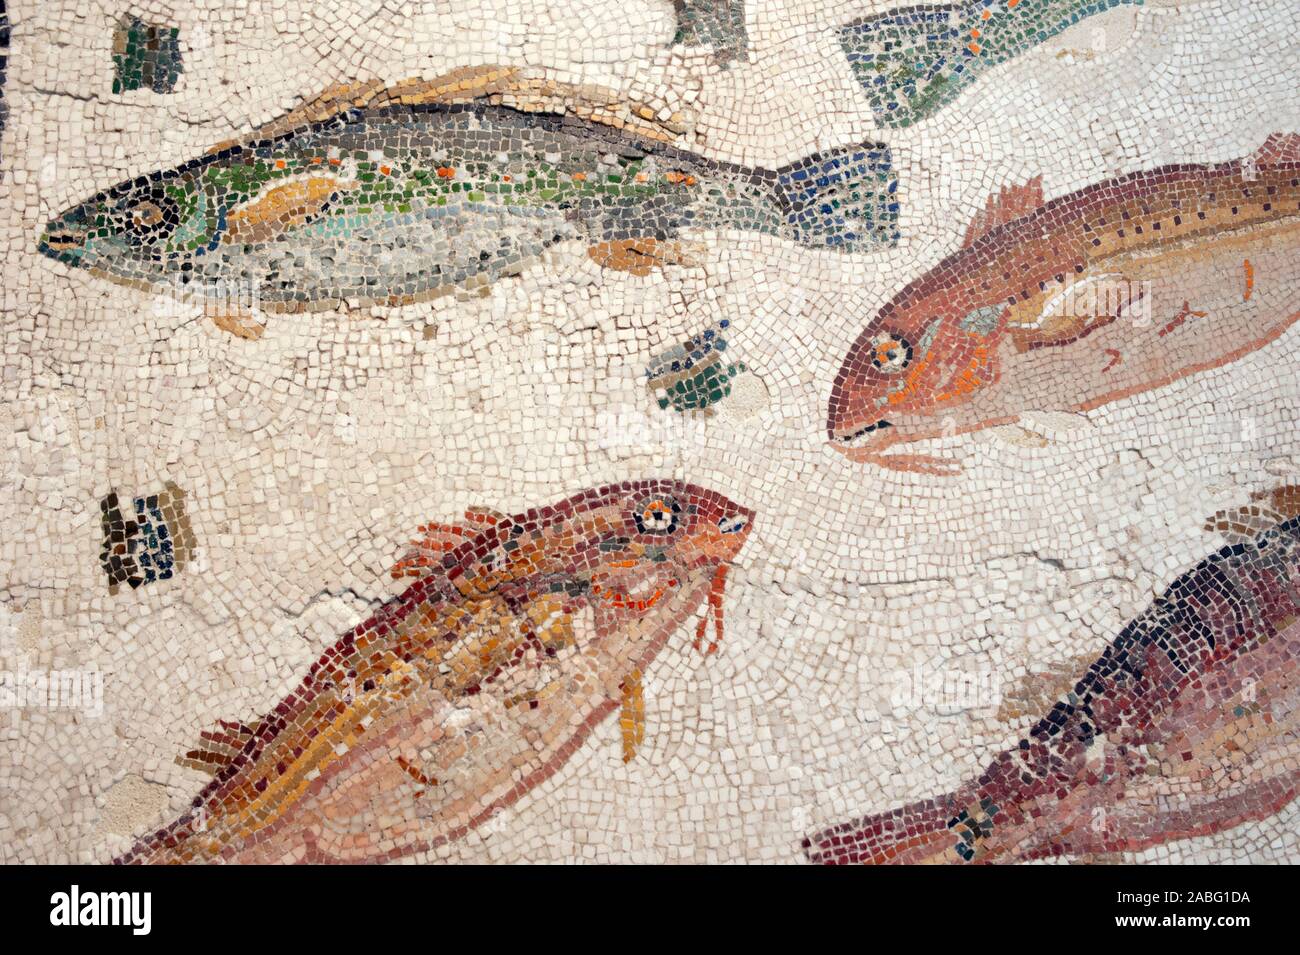 Italie, Rome, Palazzo Massimo alle terme, Museo Nazionale Romano, Musée national romain, mosaïque romaine avec poissons (2nd-3rd siècle après J.-C.) Banque D'Images